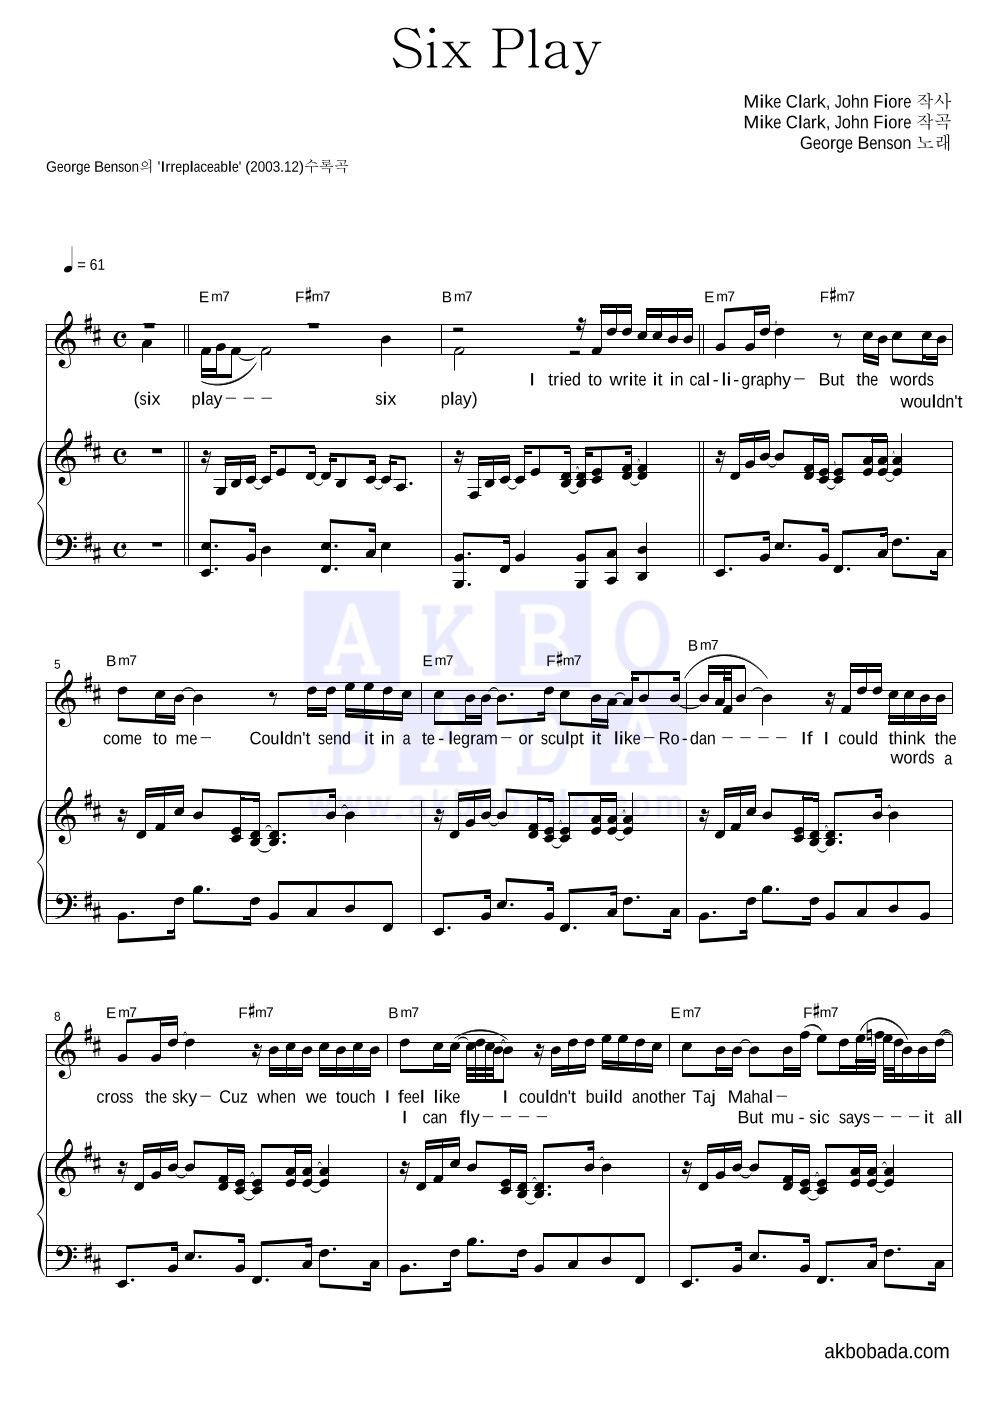 George Benson - Six Play 피아노 3단 악보 